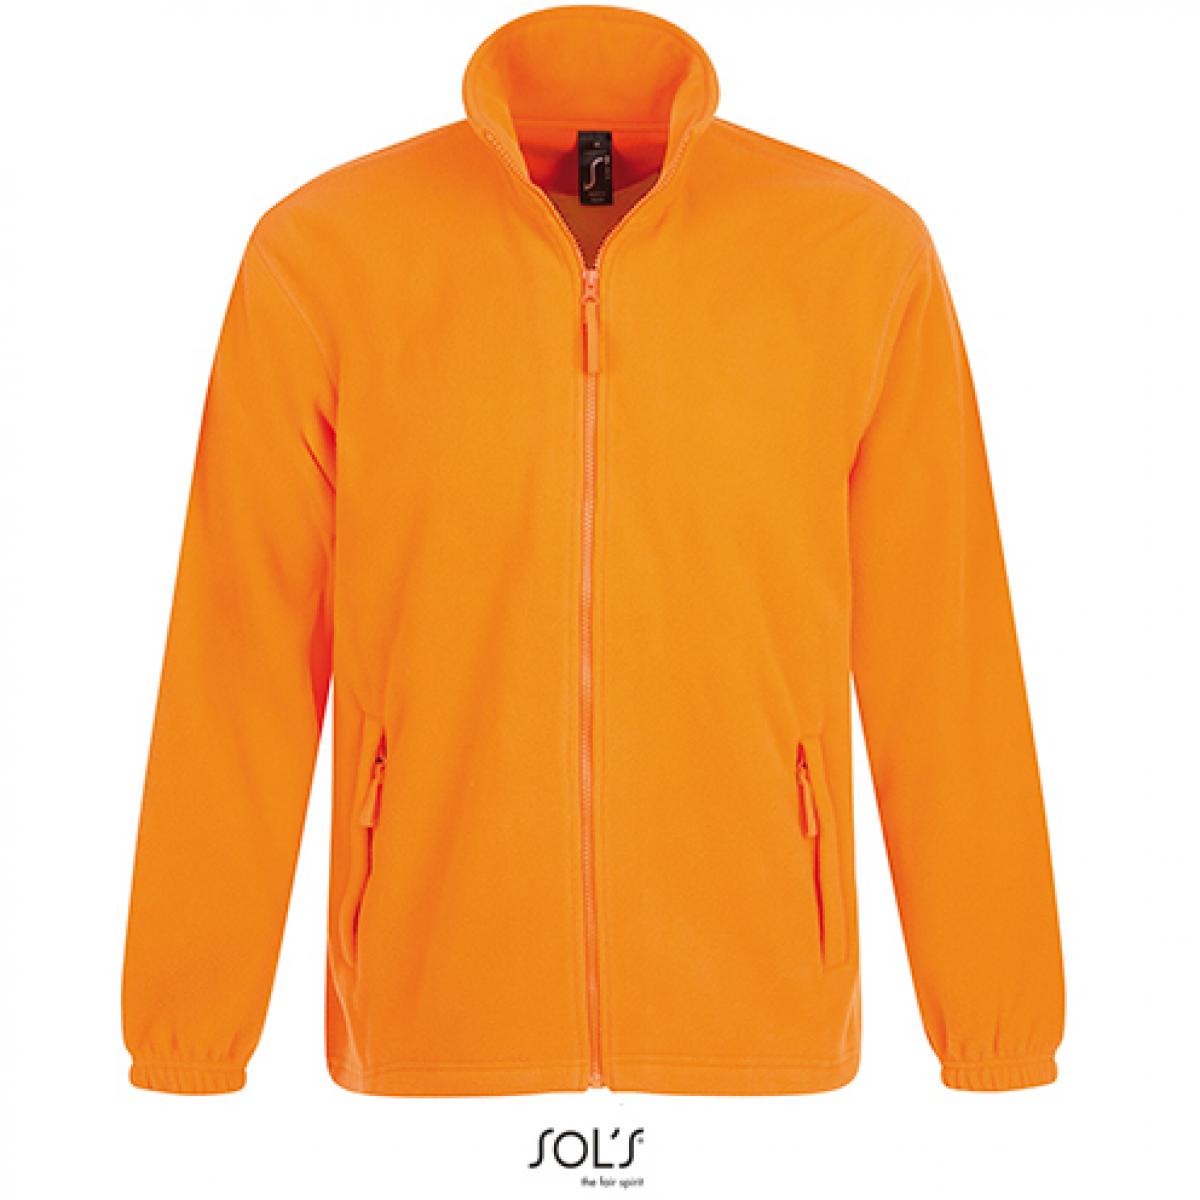 Hersteller: SOLs Herstellernummer: 55000 Artikelbezeichnung: Fleecejacket North / Herren Jacke bis 5XL Farbe: Neon Orange